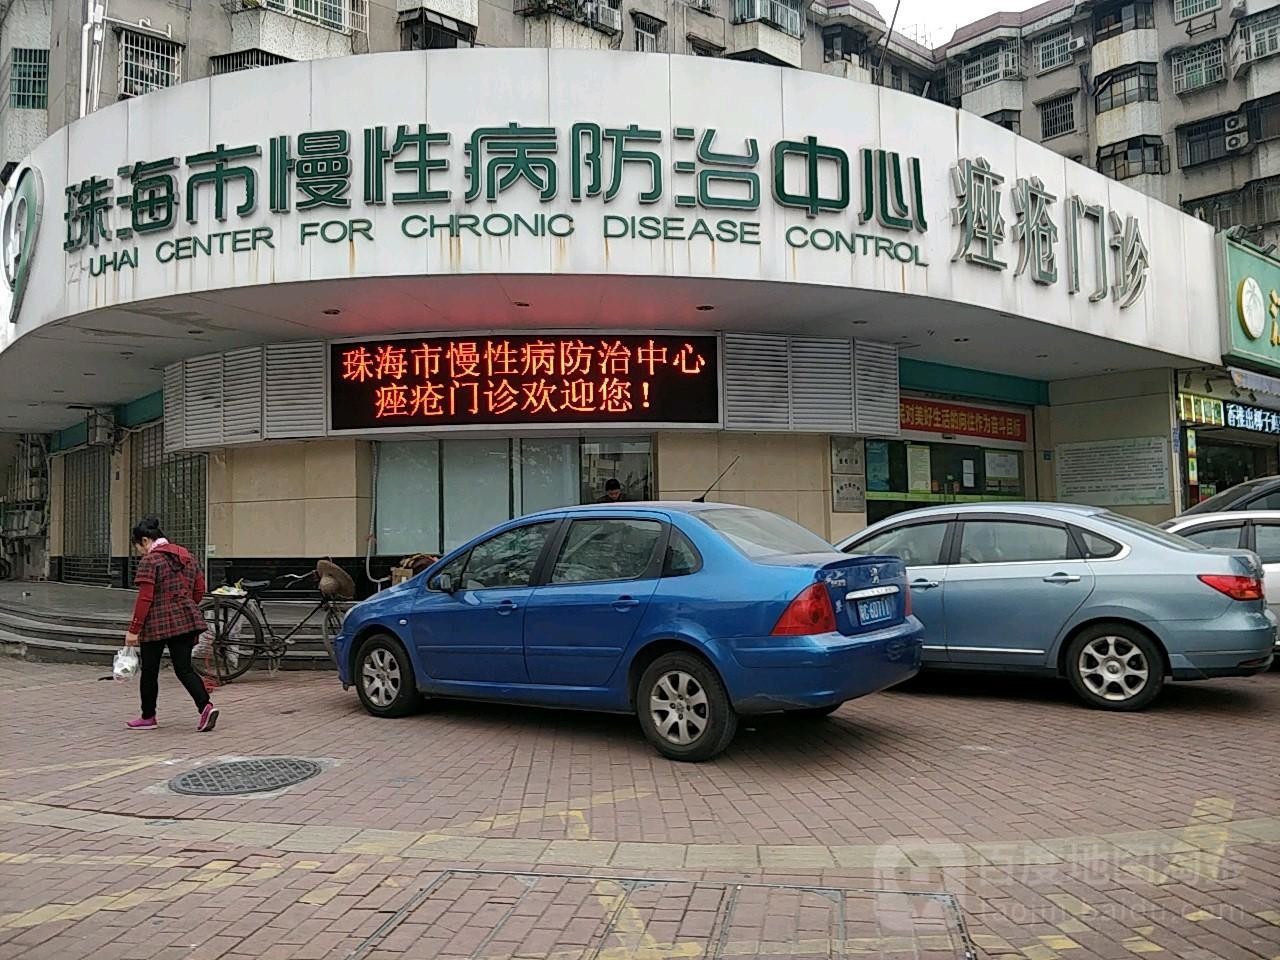 son şirket davası hakkında Zhuhai'nin Üçüncü Hastanesi